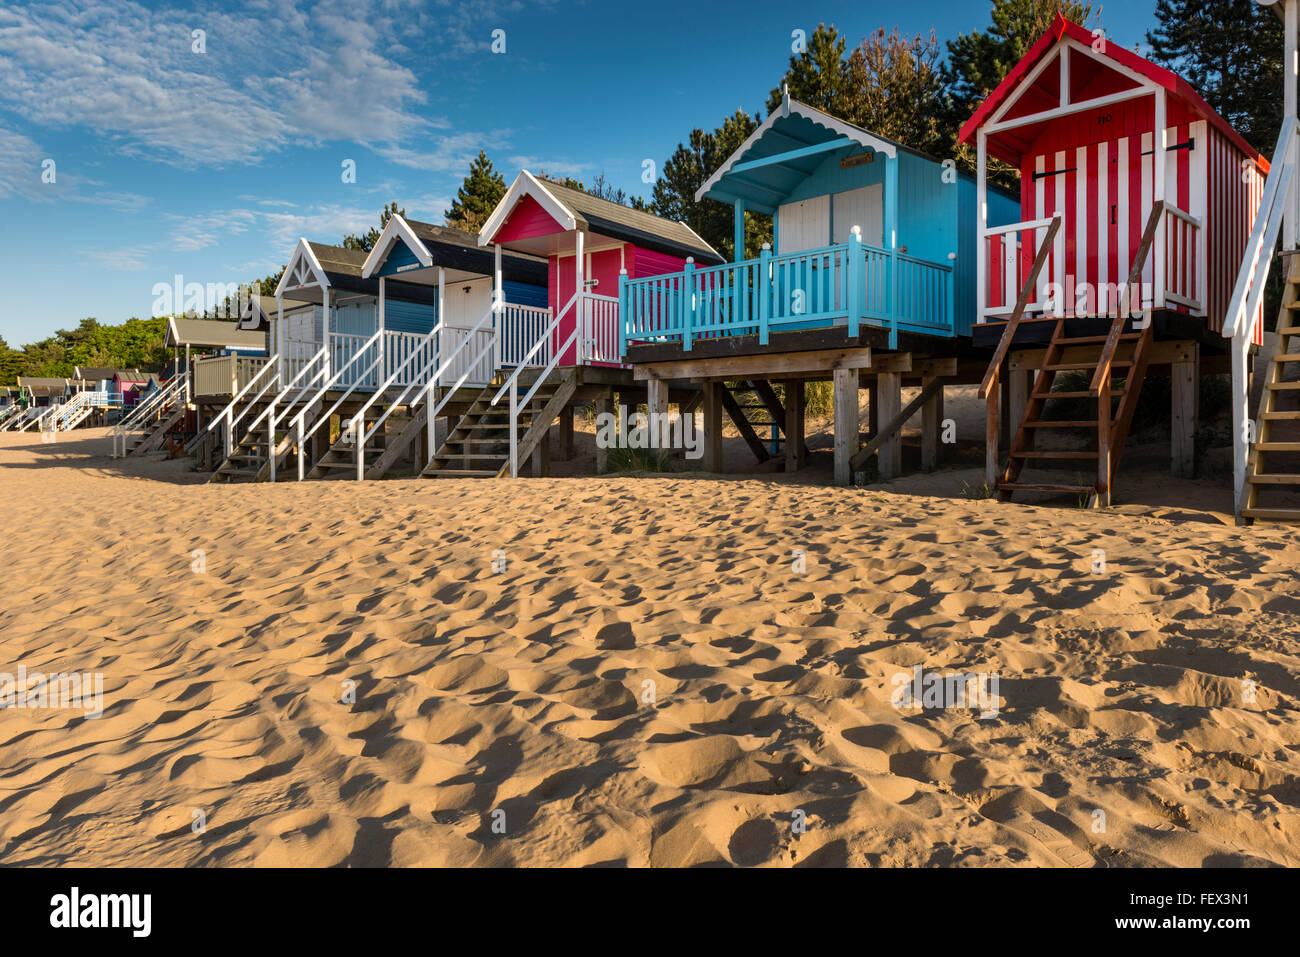 Cabines de plage en bois coloré sur la plage de sable de Wells next-the-Sea, Norfolk, UK Banque D'Images